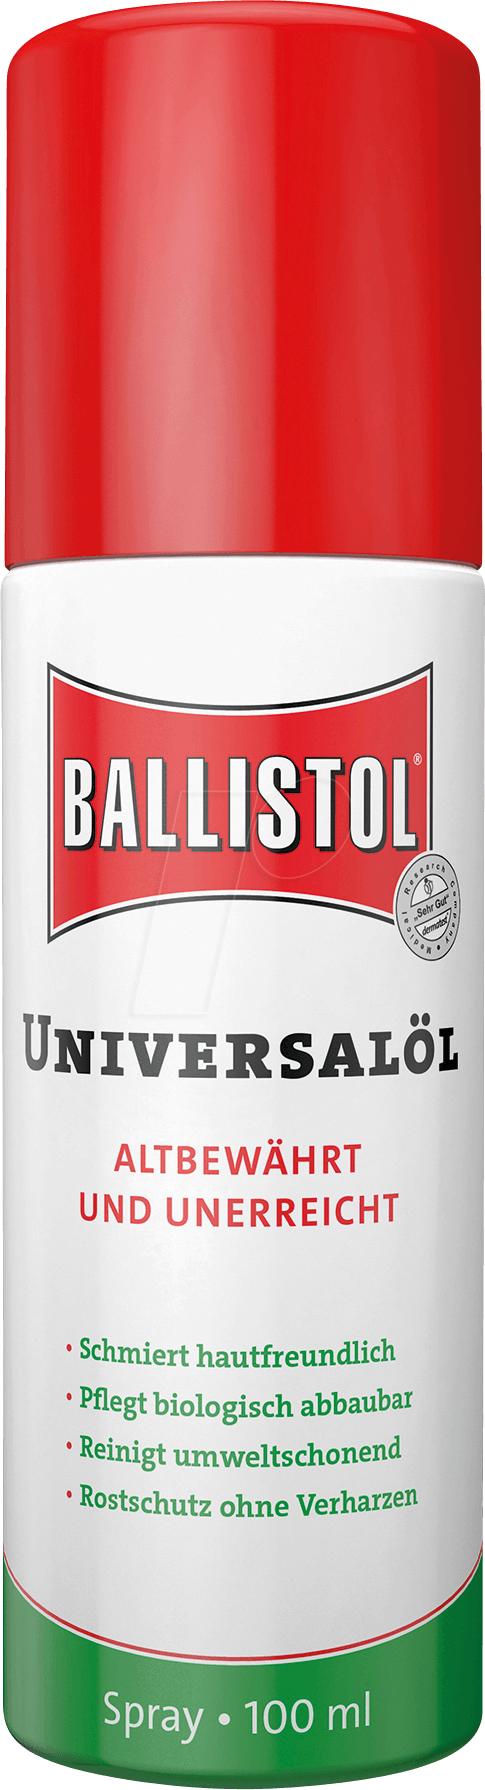 Ballistol - balistolspray 100ml